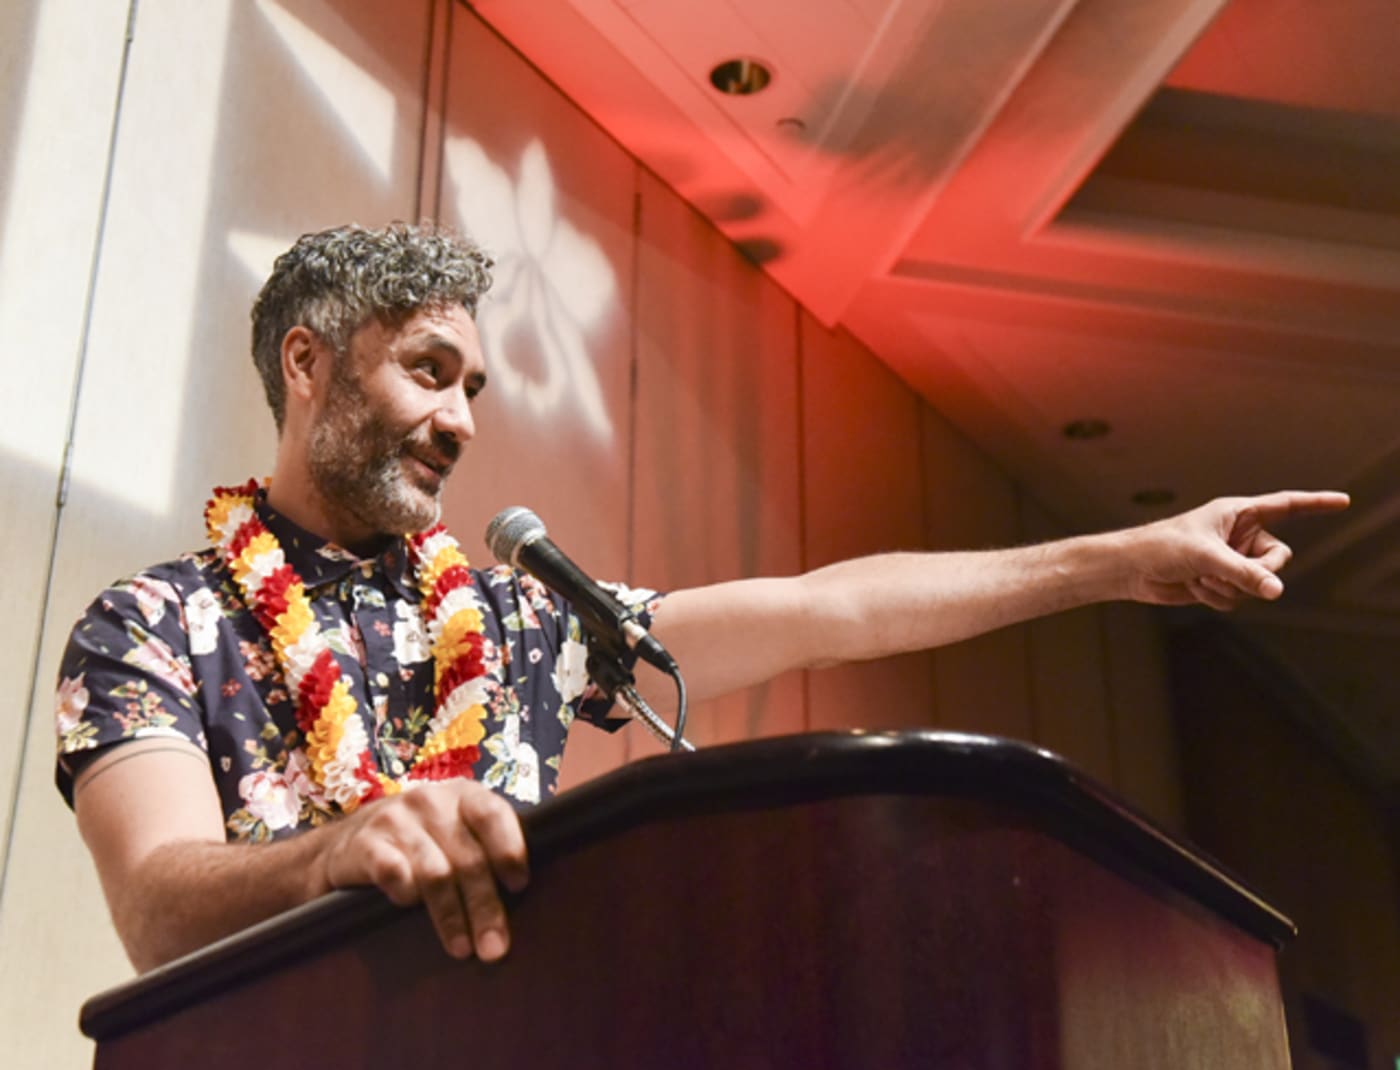 Taika Waititi speaks onstage at the 37th Annual Hawaii International Film Festival Gala